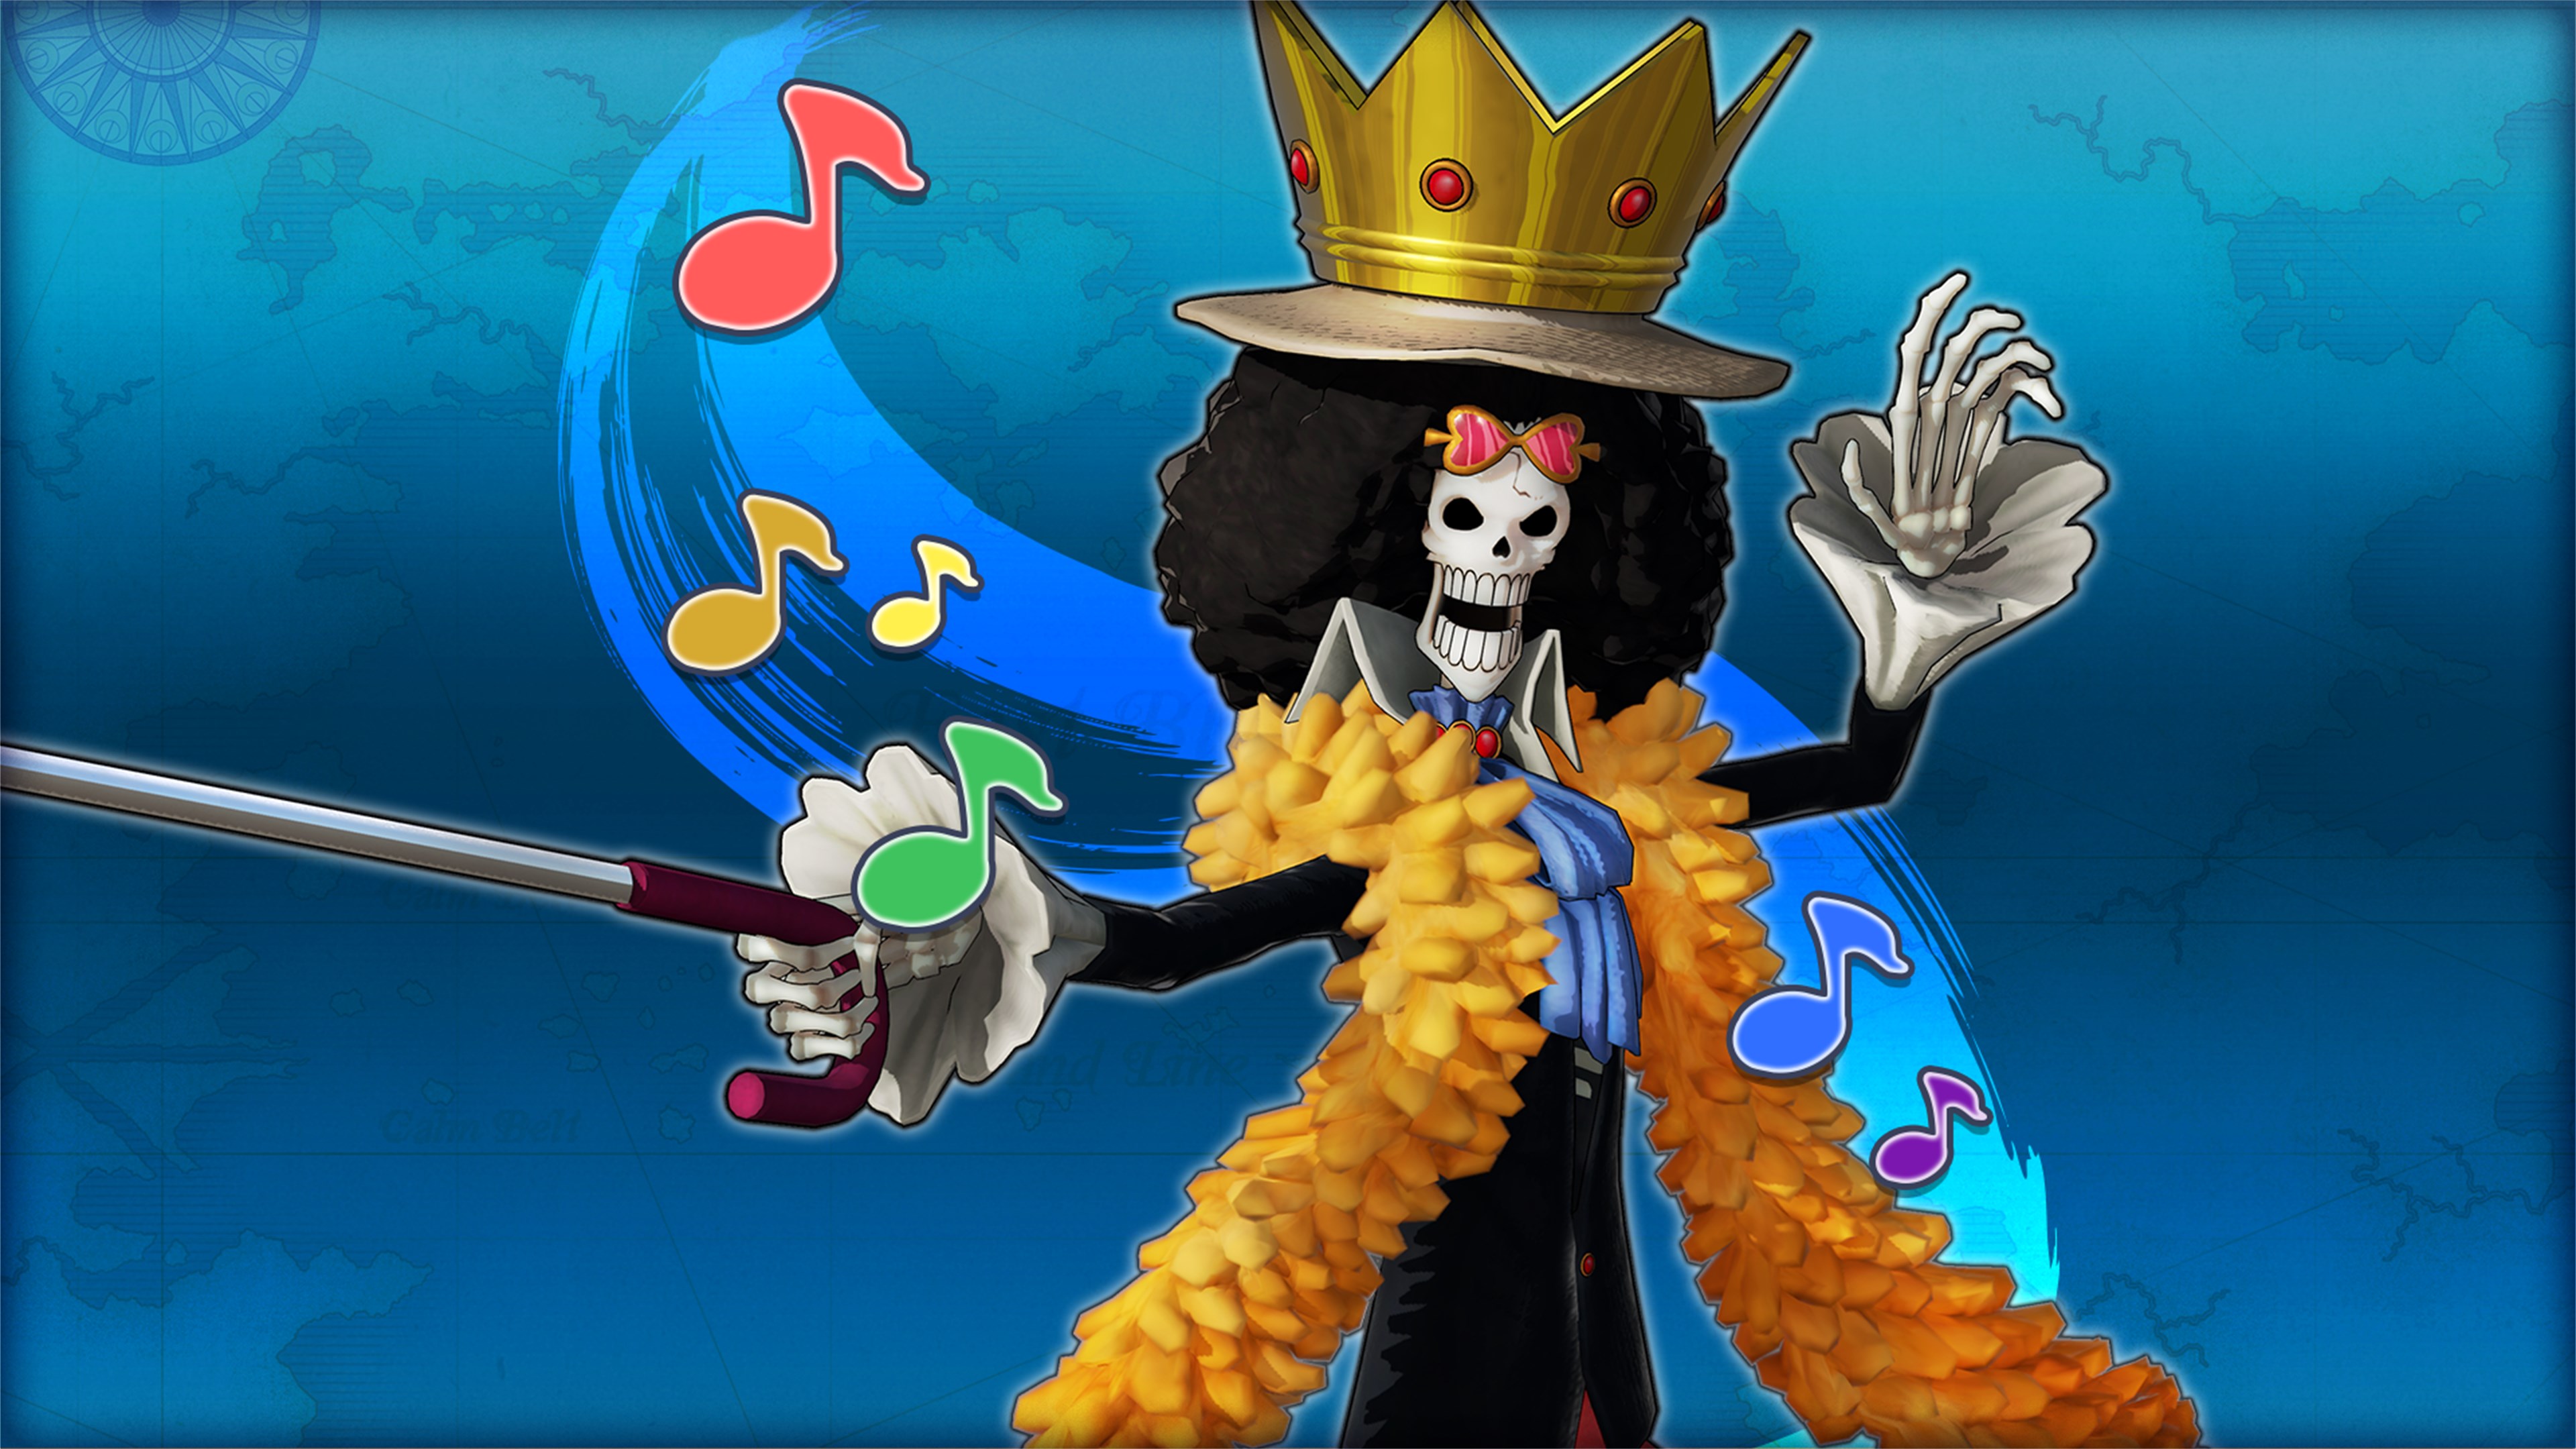 Steam Workshop::One Piece - Pirate King ( bgm )